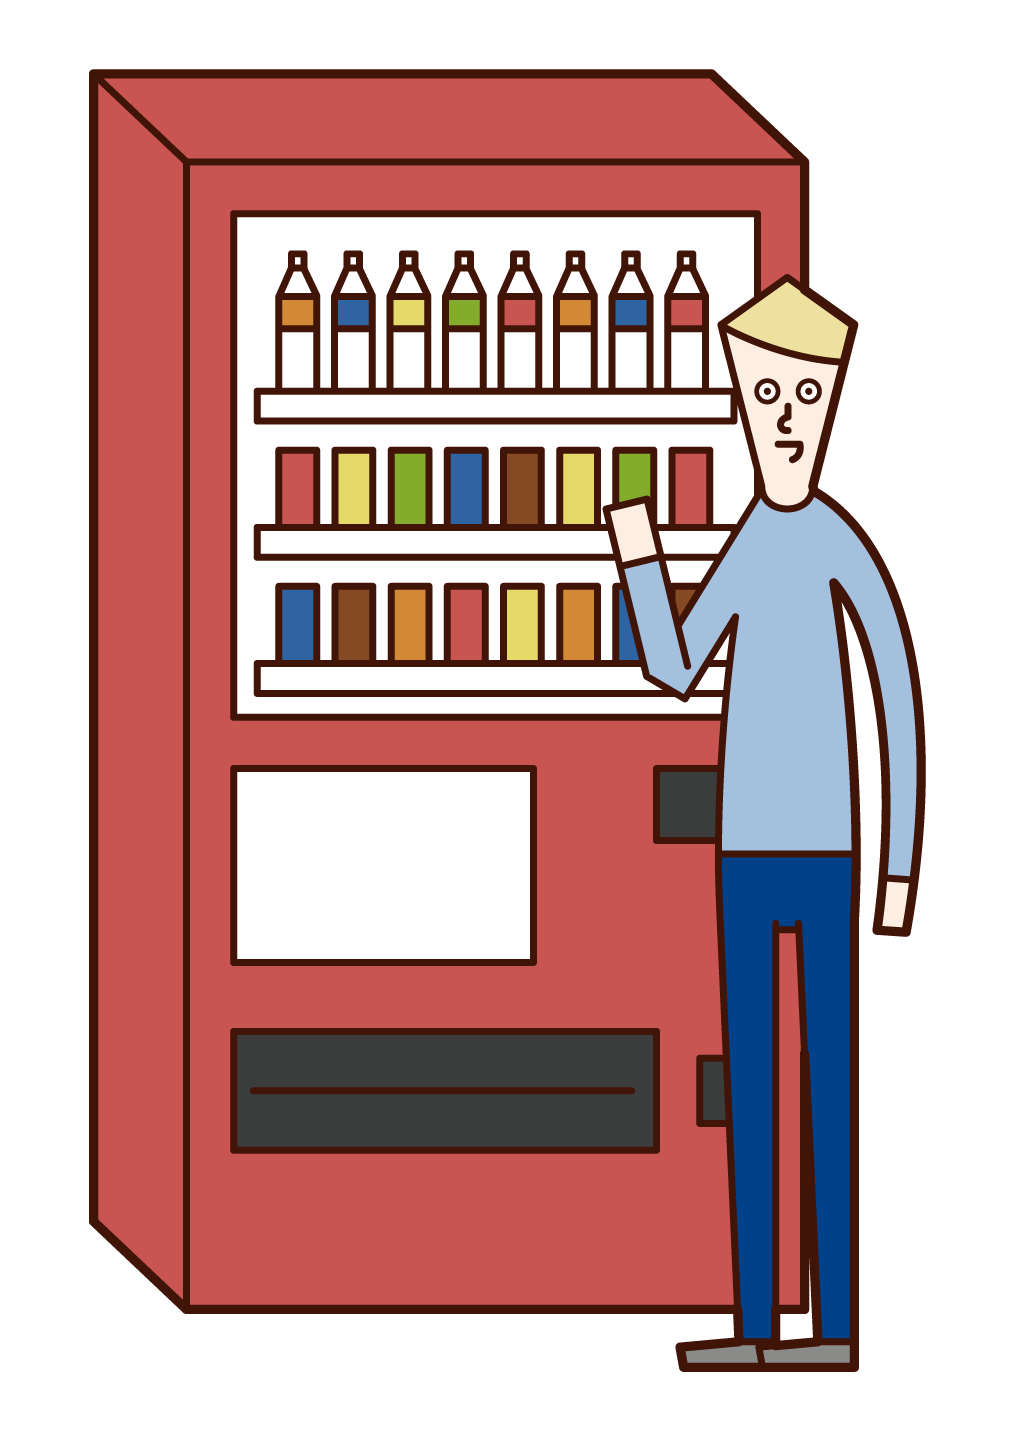 自動販売機で飲み物を買う人 男性 のイラスト フリーイラスト素材 Kukukeke ククケケ